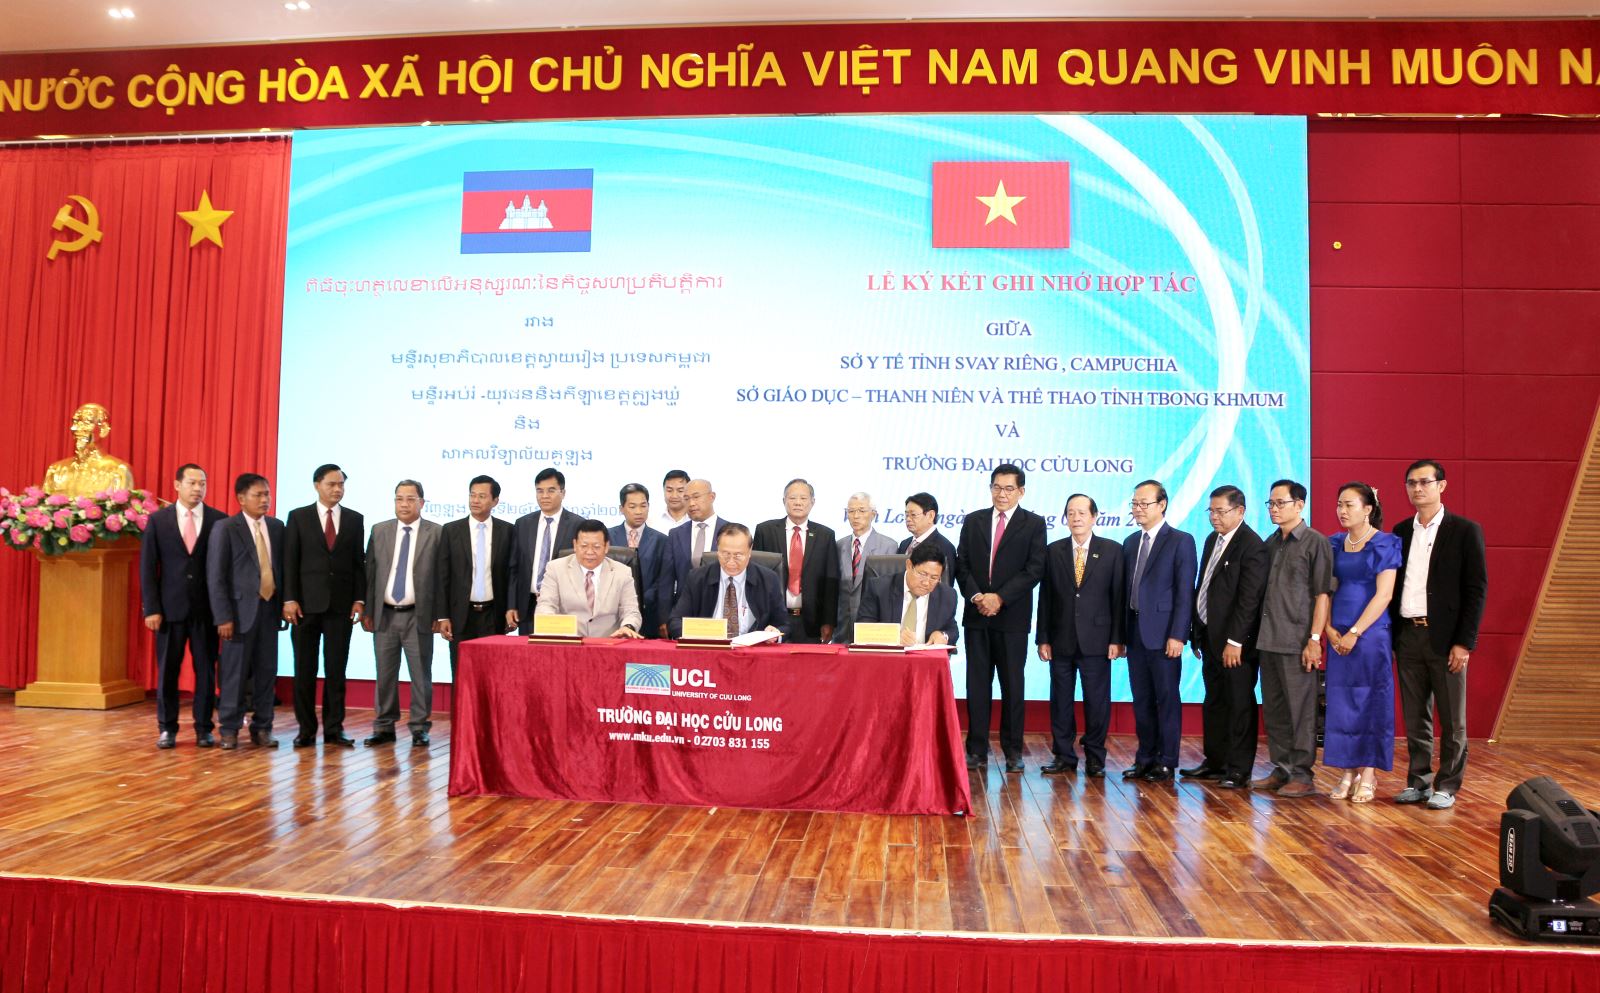 Trường Đại học Cửu Long đã ký kết Biên bản ghi nhớ hợp tác với Sở Y tế tỉnh Svay Rieng và Sở Giáo dục, Thanh niên và Thể thao tỉnh Tbong Khmum (Campuchia).